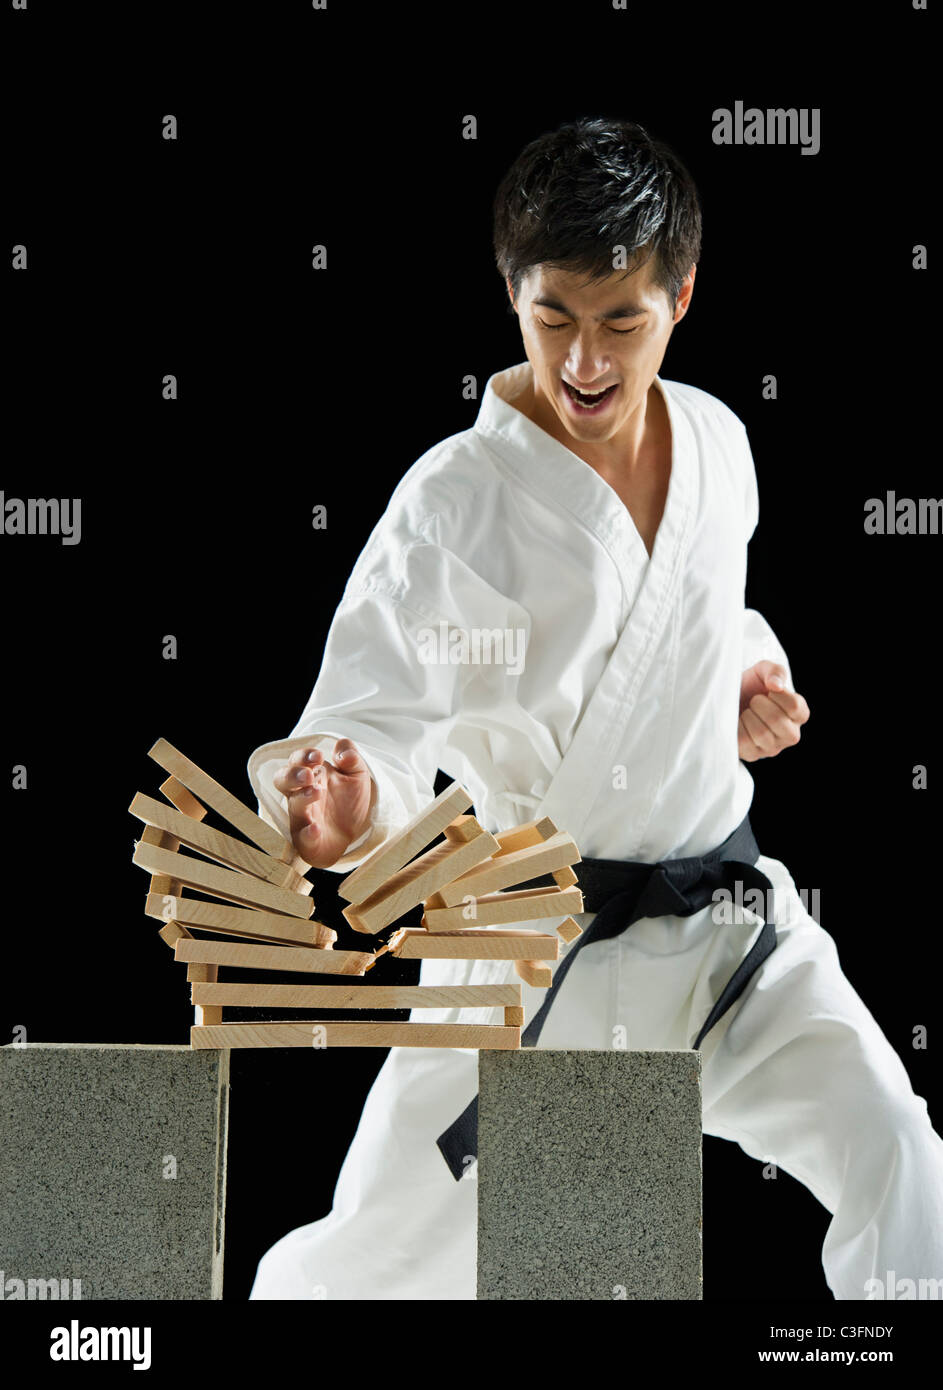 Maschio asiatici karate cintura nera ultime tavole di legno Foto stock -  Alamy